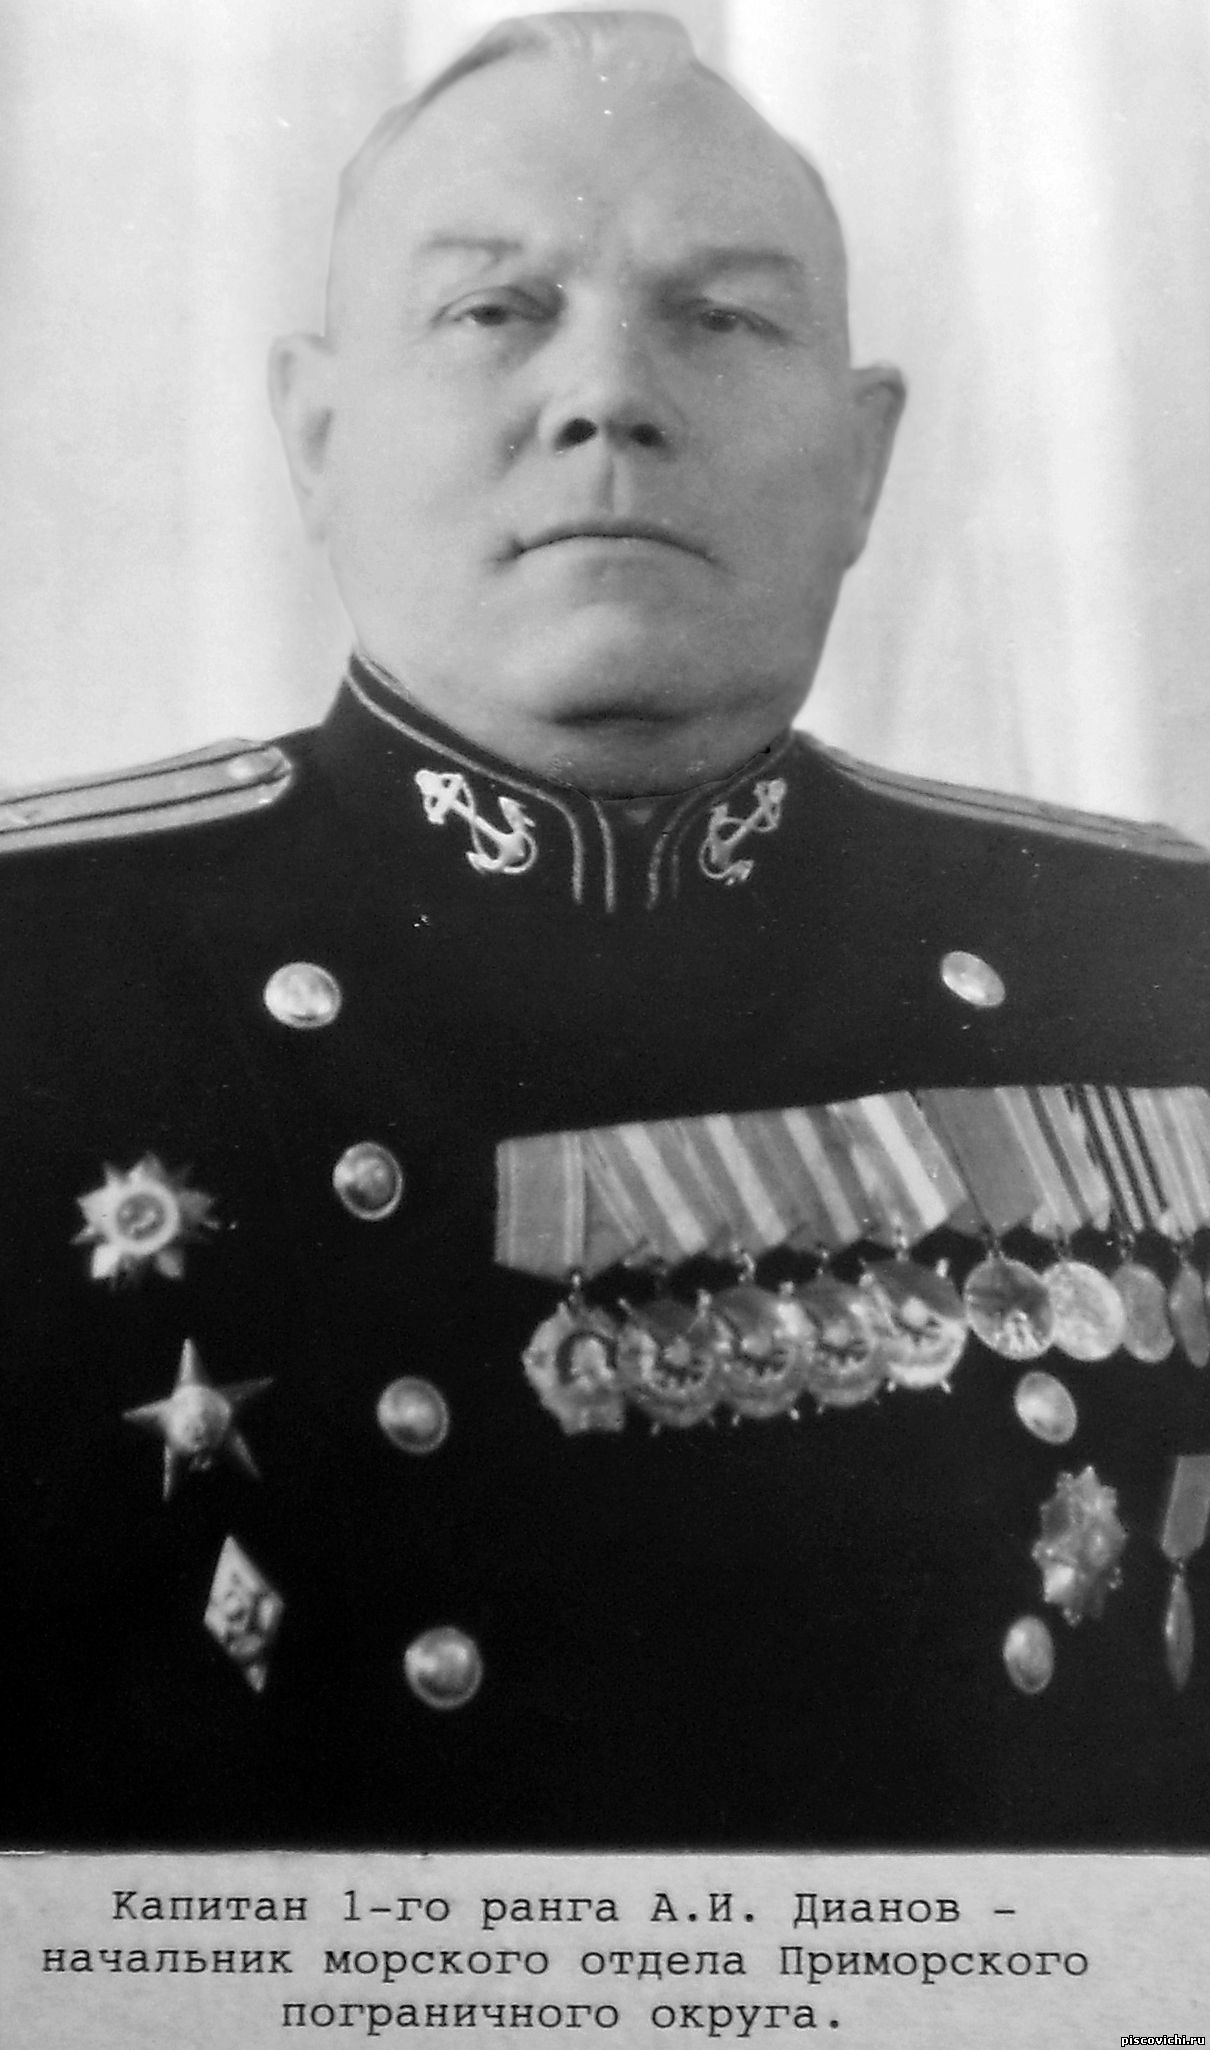 ДИАНОВ Александр Иванович, с 23 июня 1941 года по 25 августа 1942 года командир Иоканьгской ВМБ.